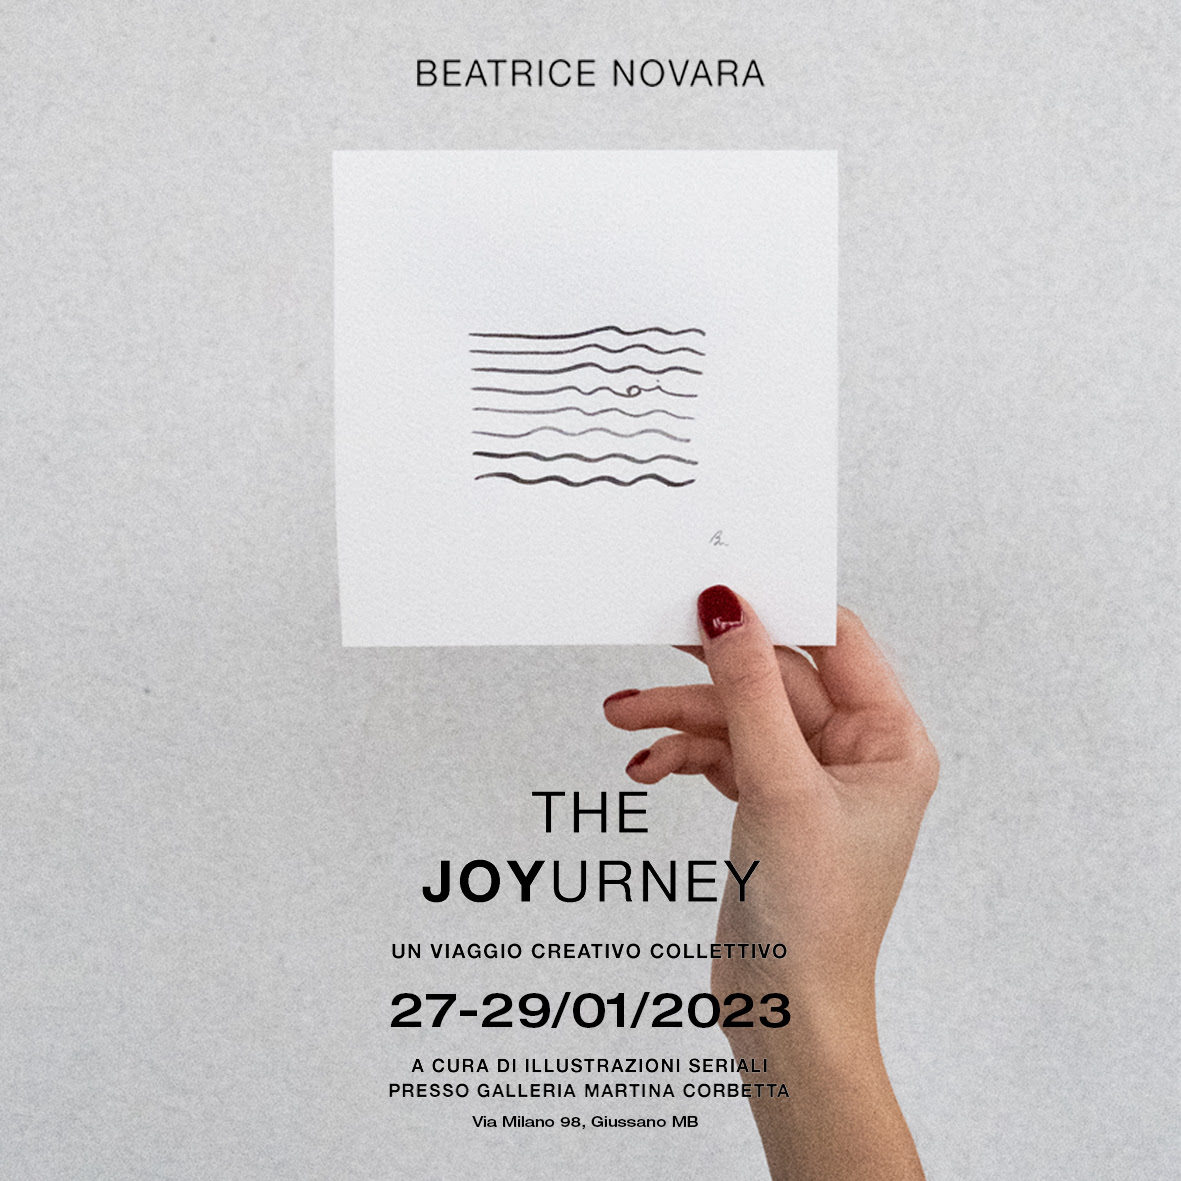 Beatrice Novara – The JOYurney